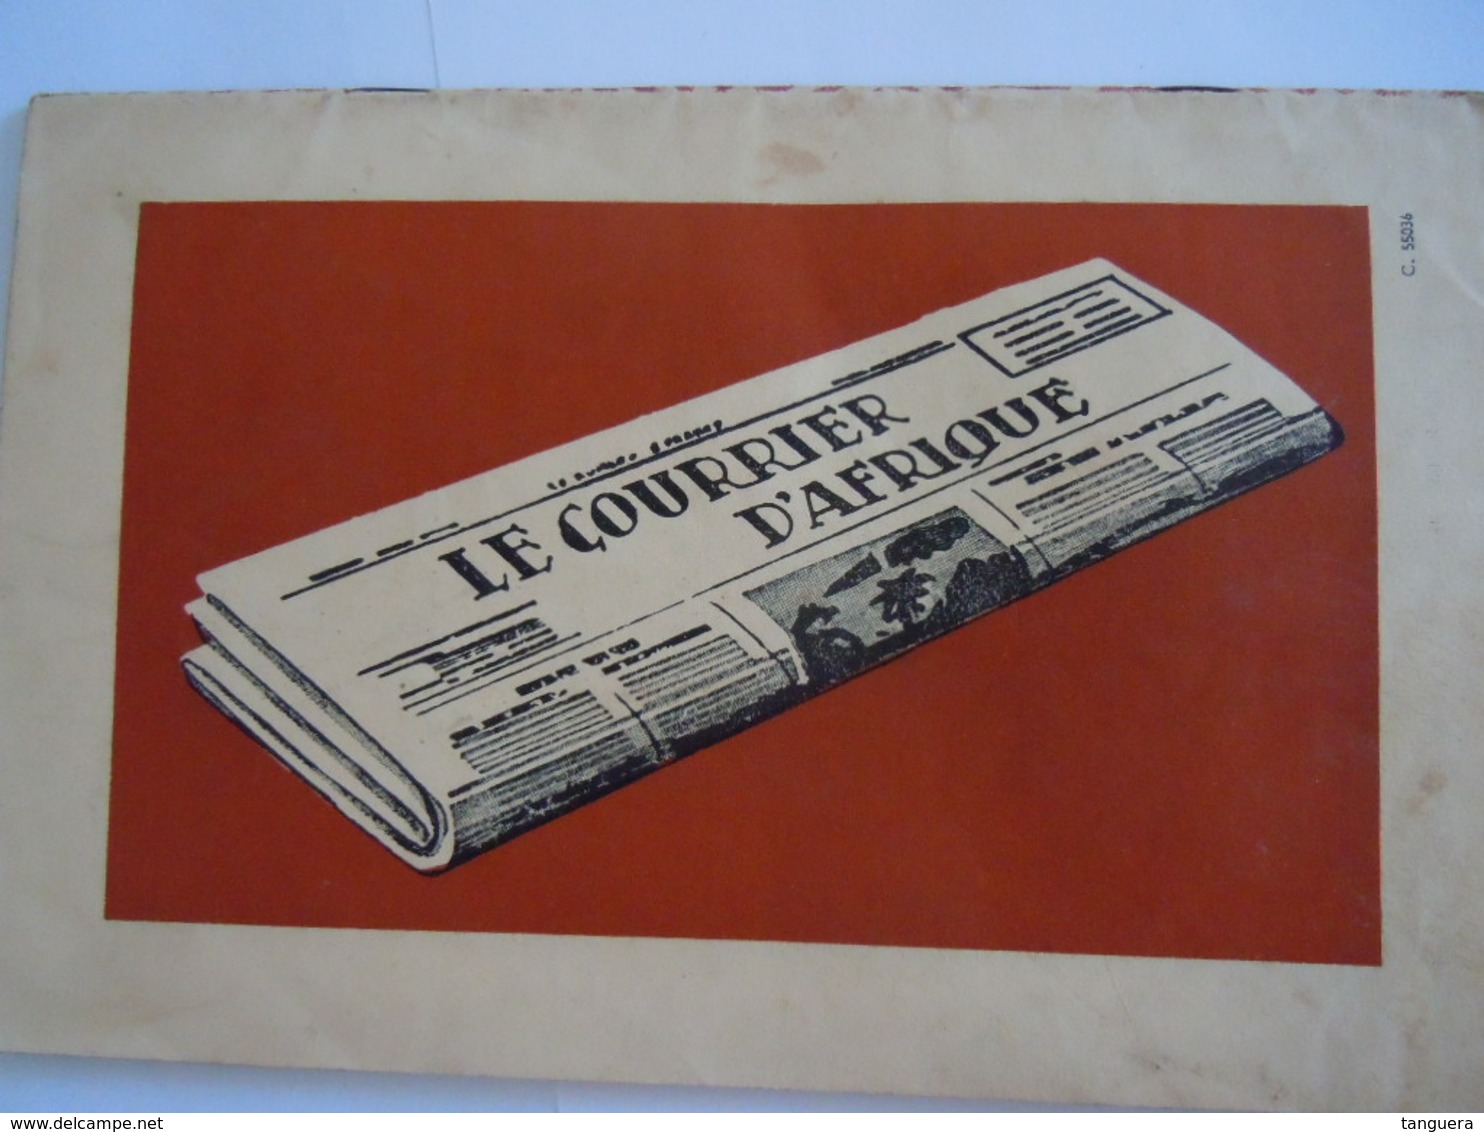 ECHO SCOUT N° 6 1955 Organe officiel de la F.E.C.C.B. scoutisme en Congo Belge 32 pages Viste du roi Baudoin